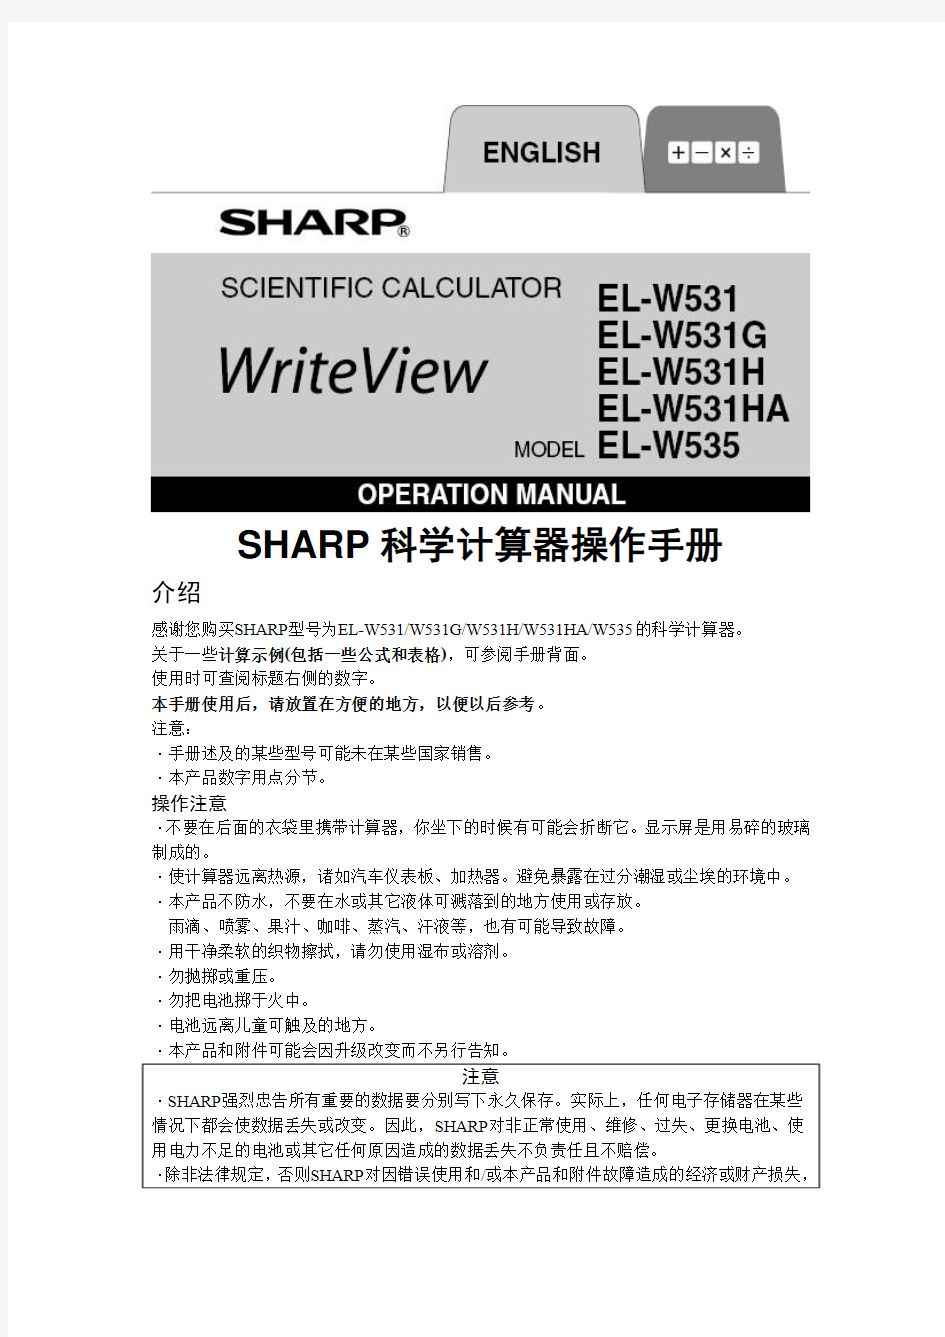 SHARP科学计算器操作手册